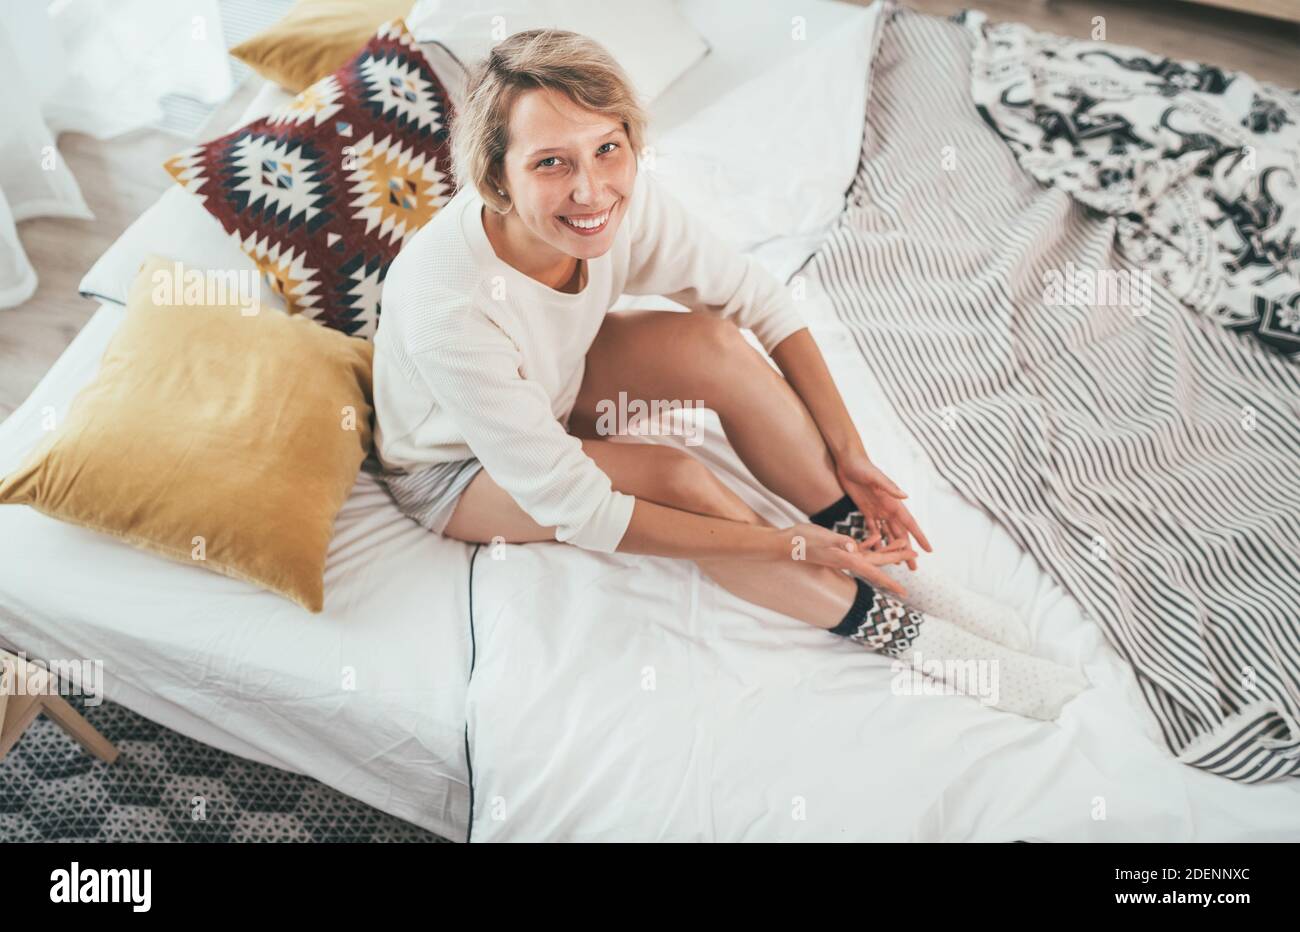 Junge blonde Frau in Pyjama gekleidet sitzen im gemütlichen Bett mit Kissen und aufrichtig lächelnd und Blick auf die Kamera. Wohnen zu Hause und süß gemütlich Stockfoto